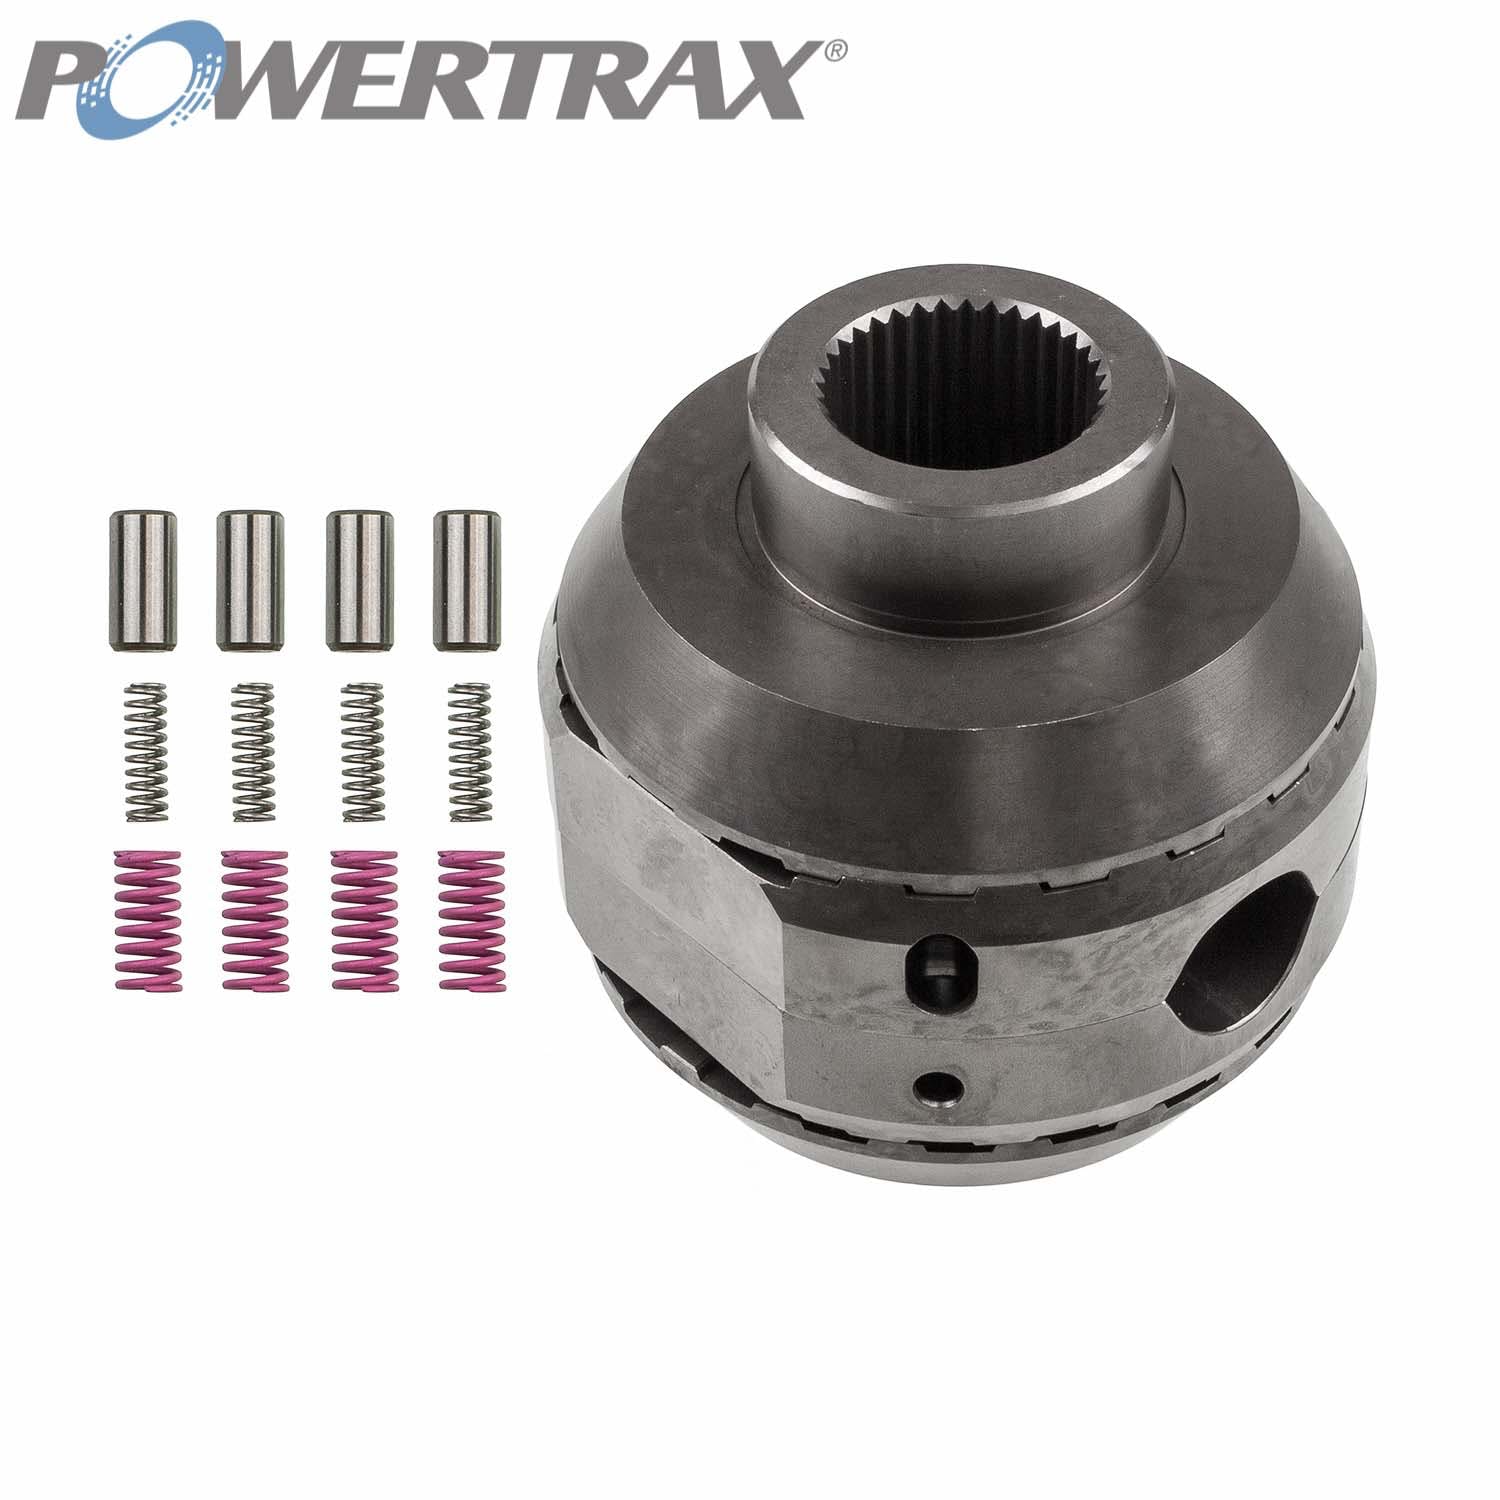 PowerTrax 1840-LR Lock Right Locker